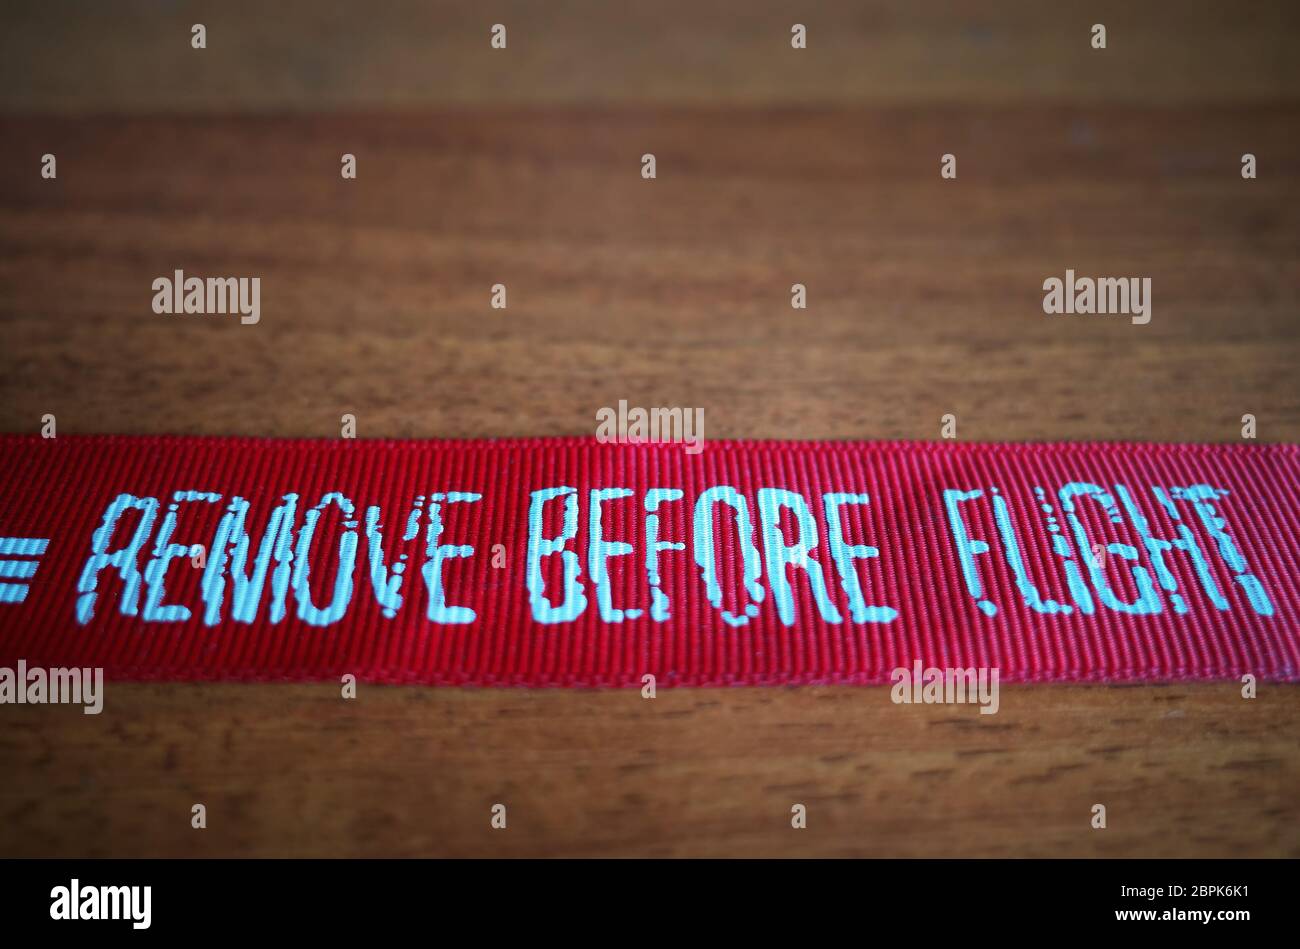 Remove before flight immagini e fotografie stock ad alta risoluzione - Alamy